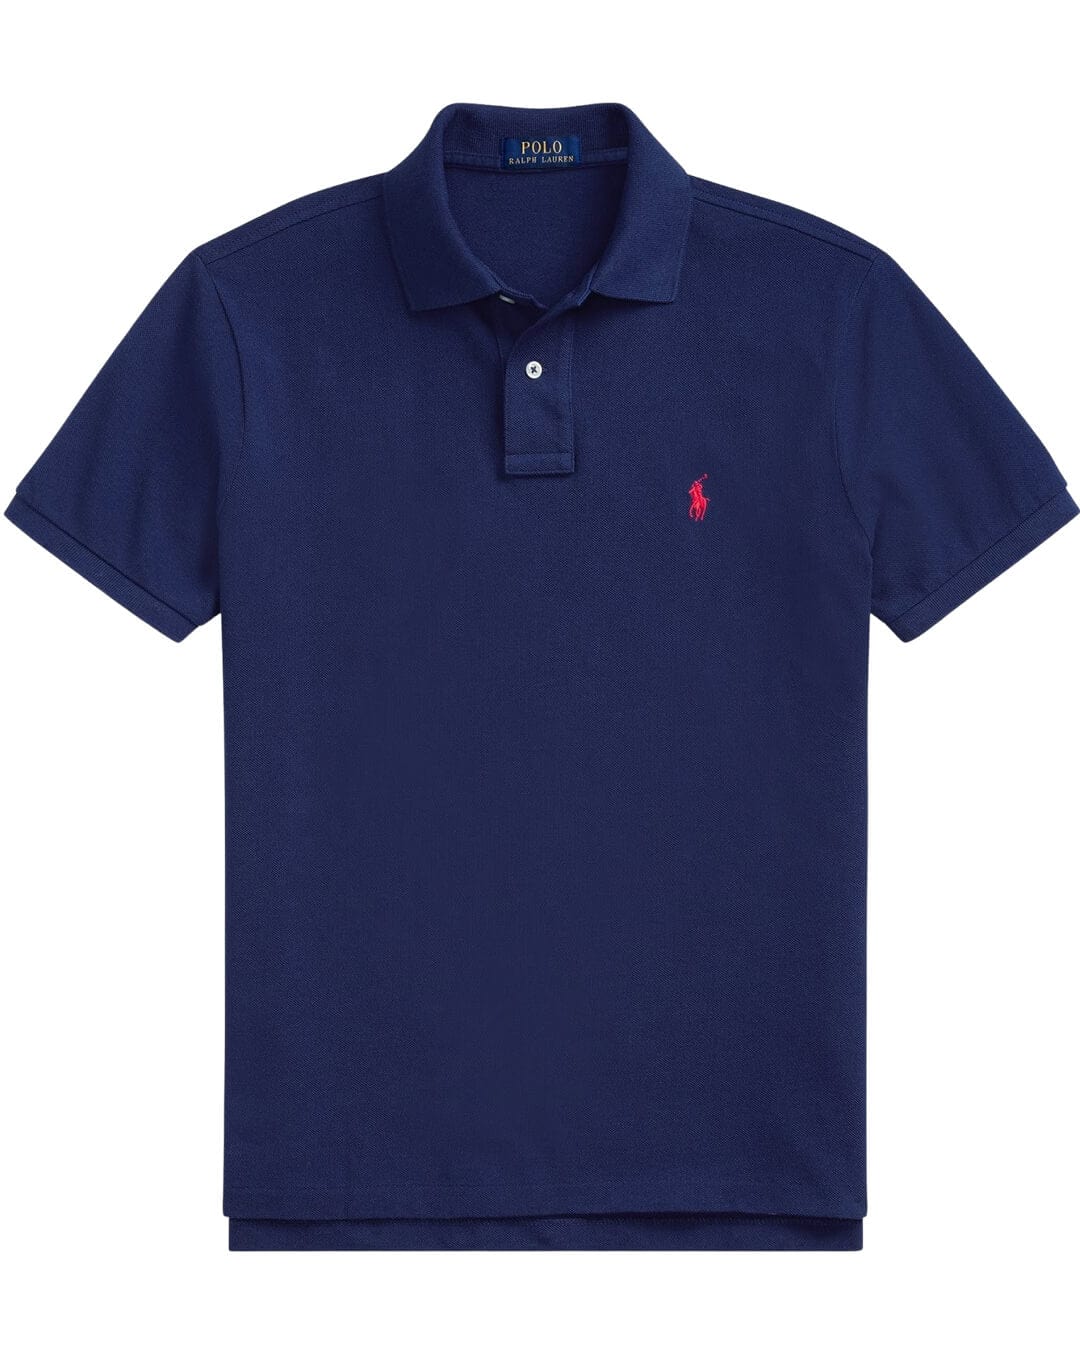 Polo Ralph Lauren Navy Polo Shirt - Bortex Fine Tailoring